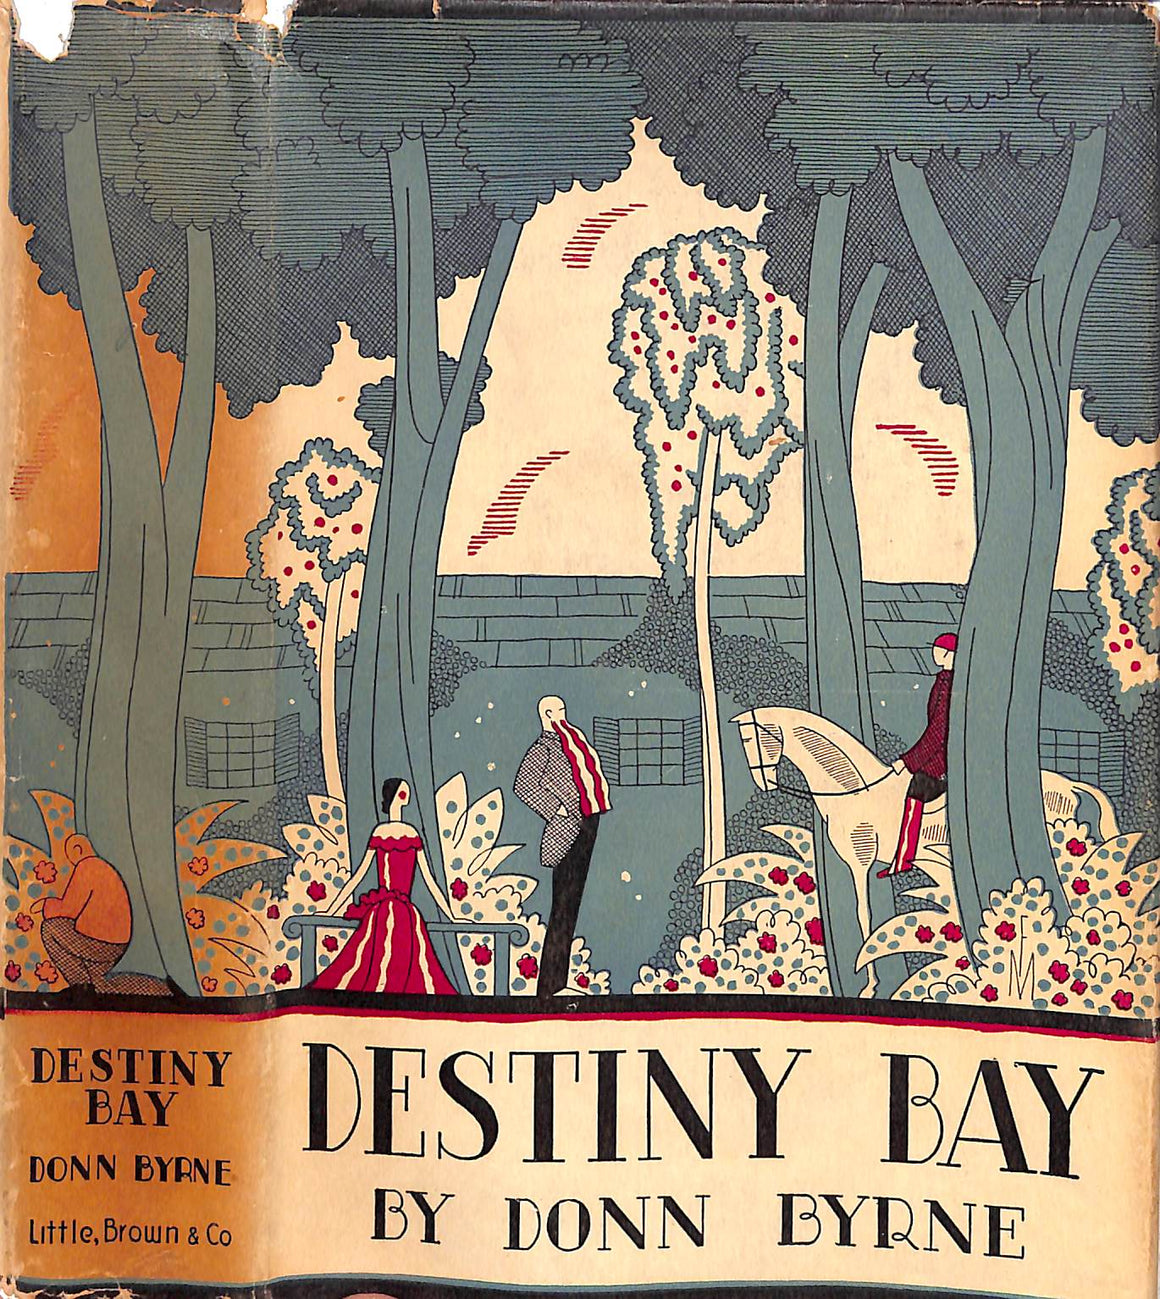 "Destiny Bay" 1949 BYRNE, Donn